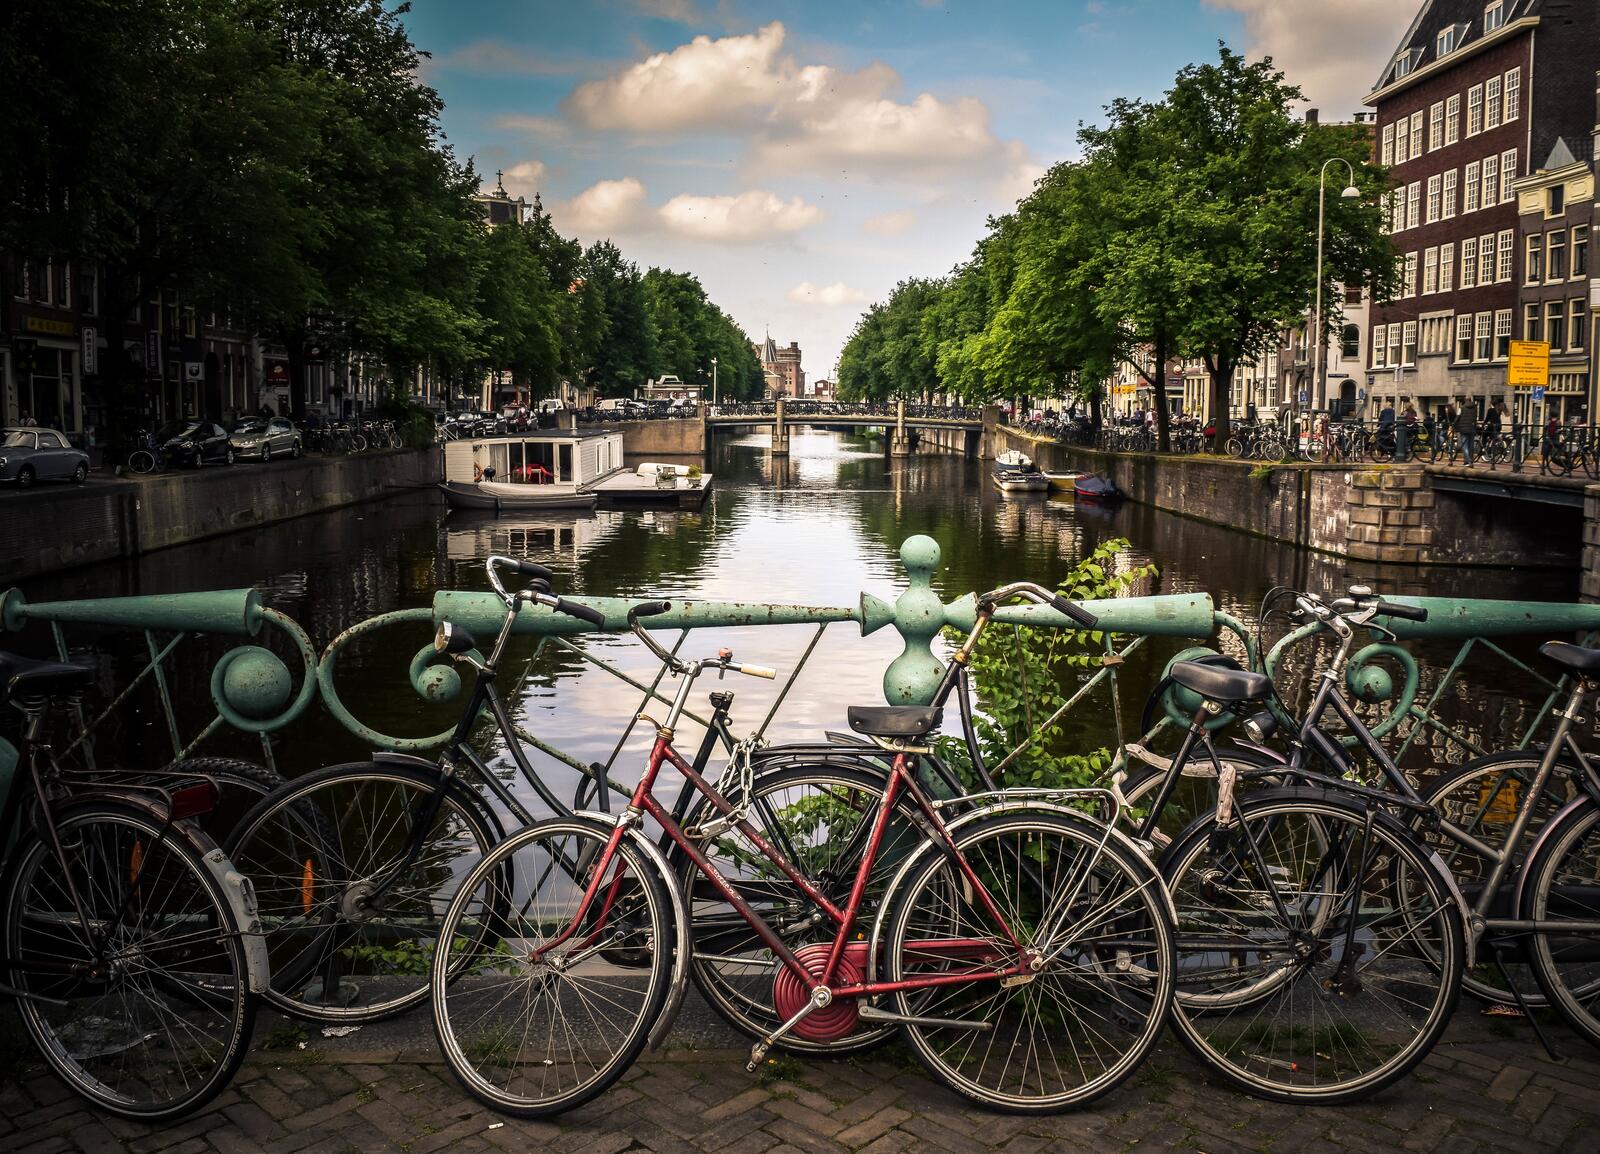 免费照片阿姆斯特丹房屋之间的一条小运河